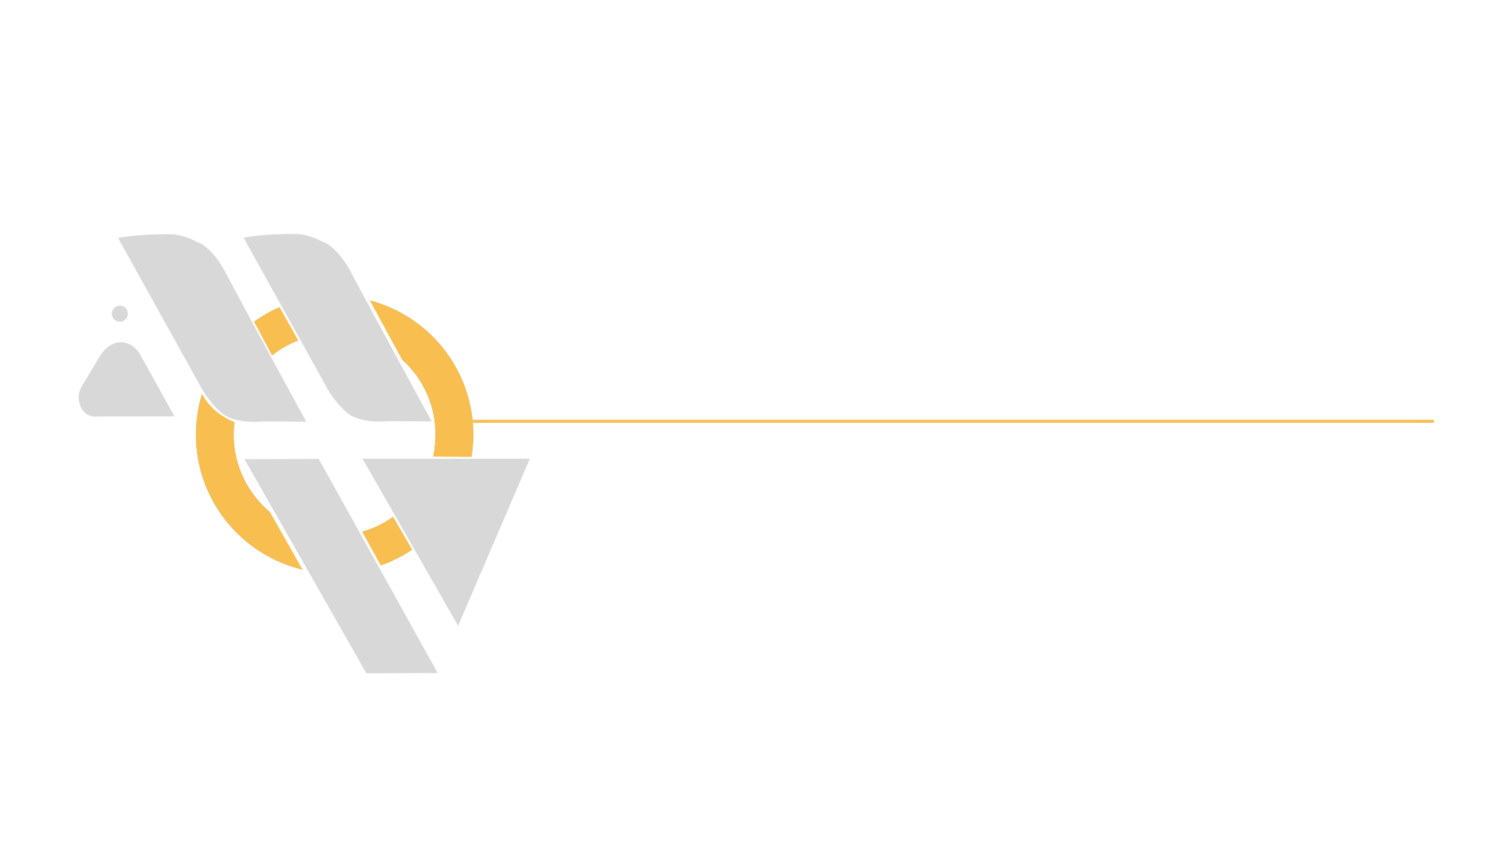 Moveo Studios